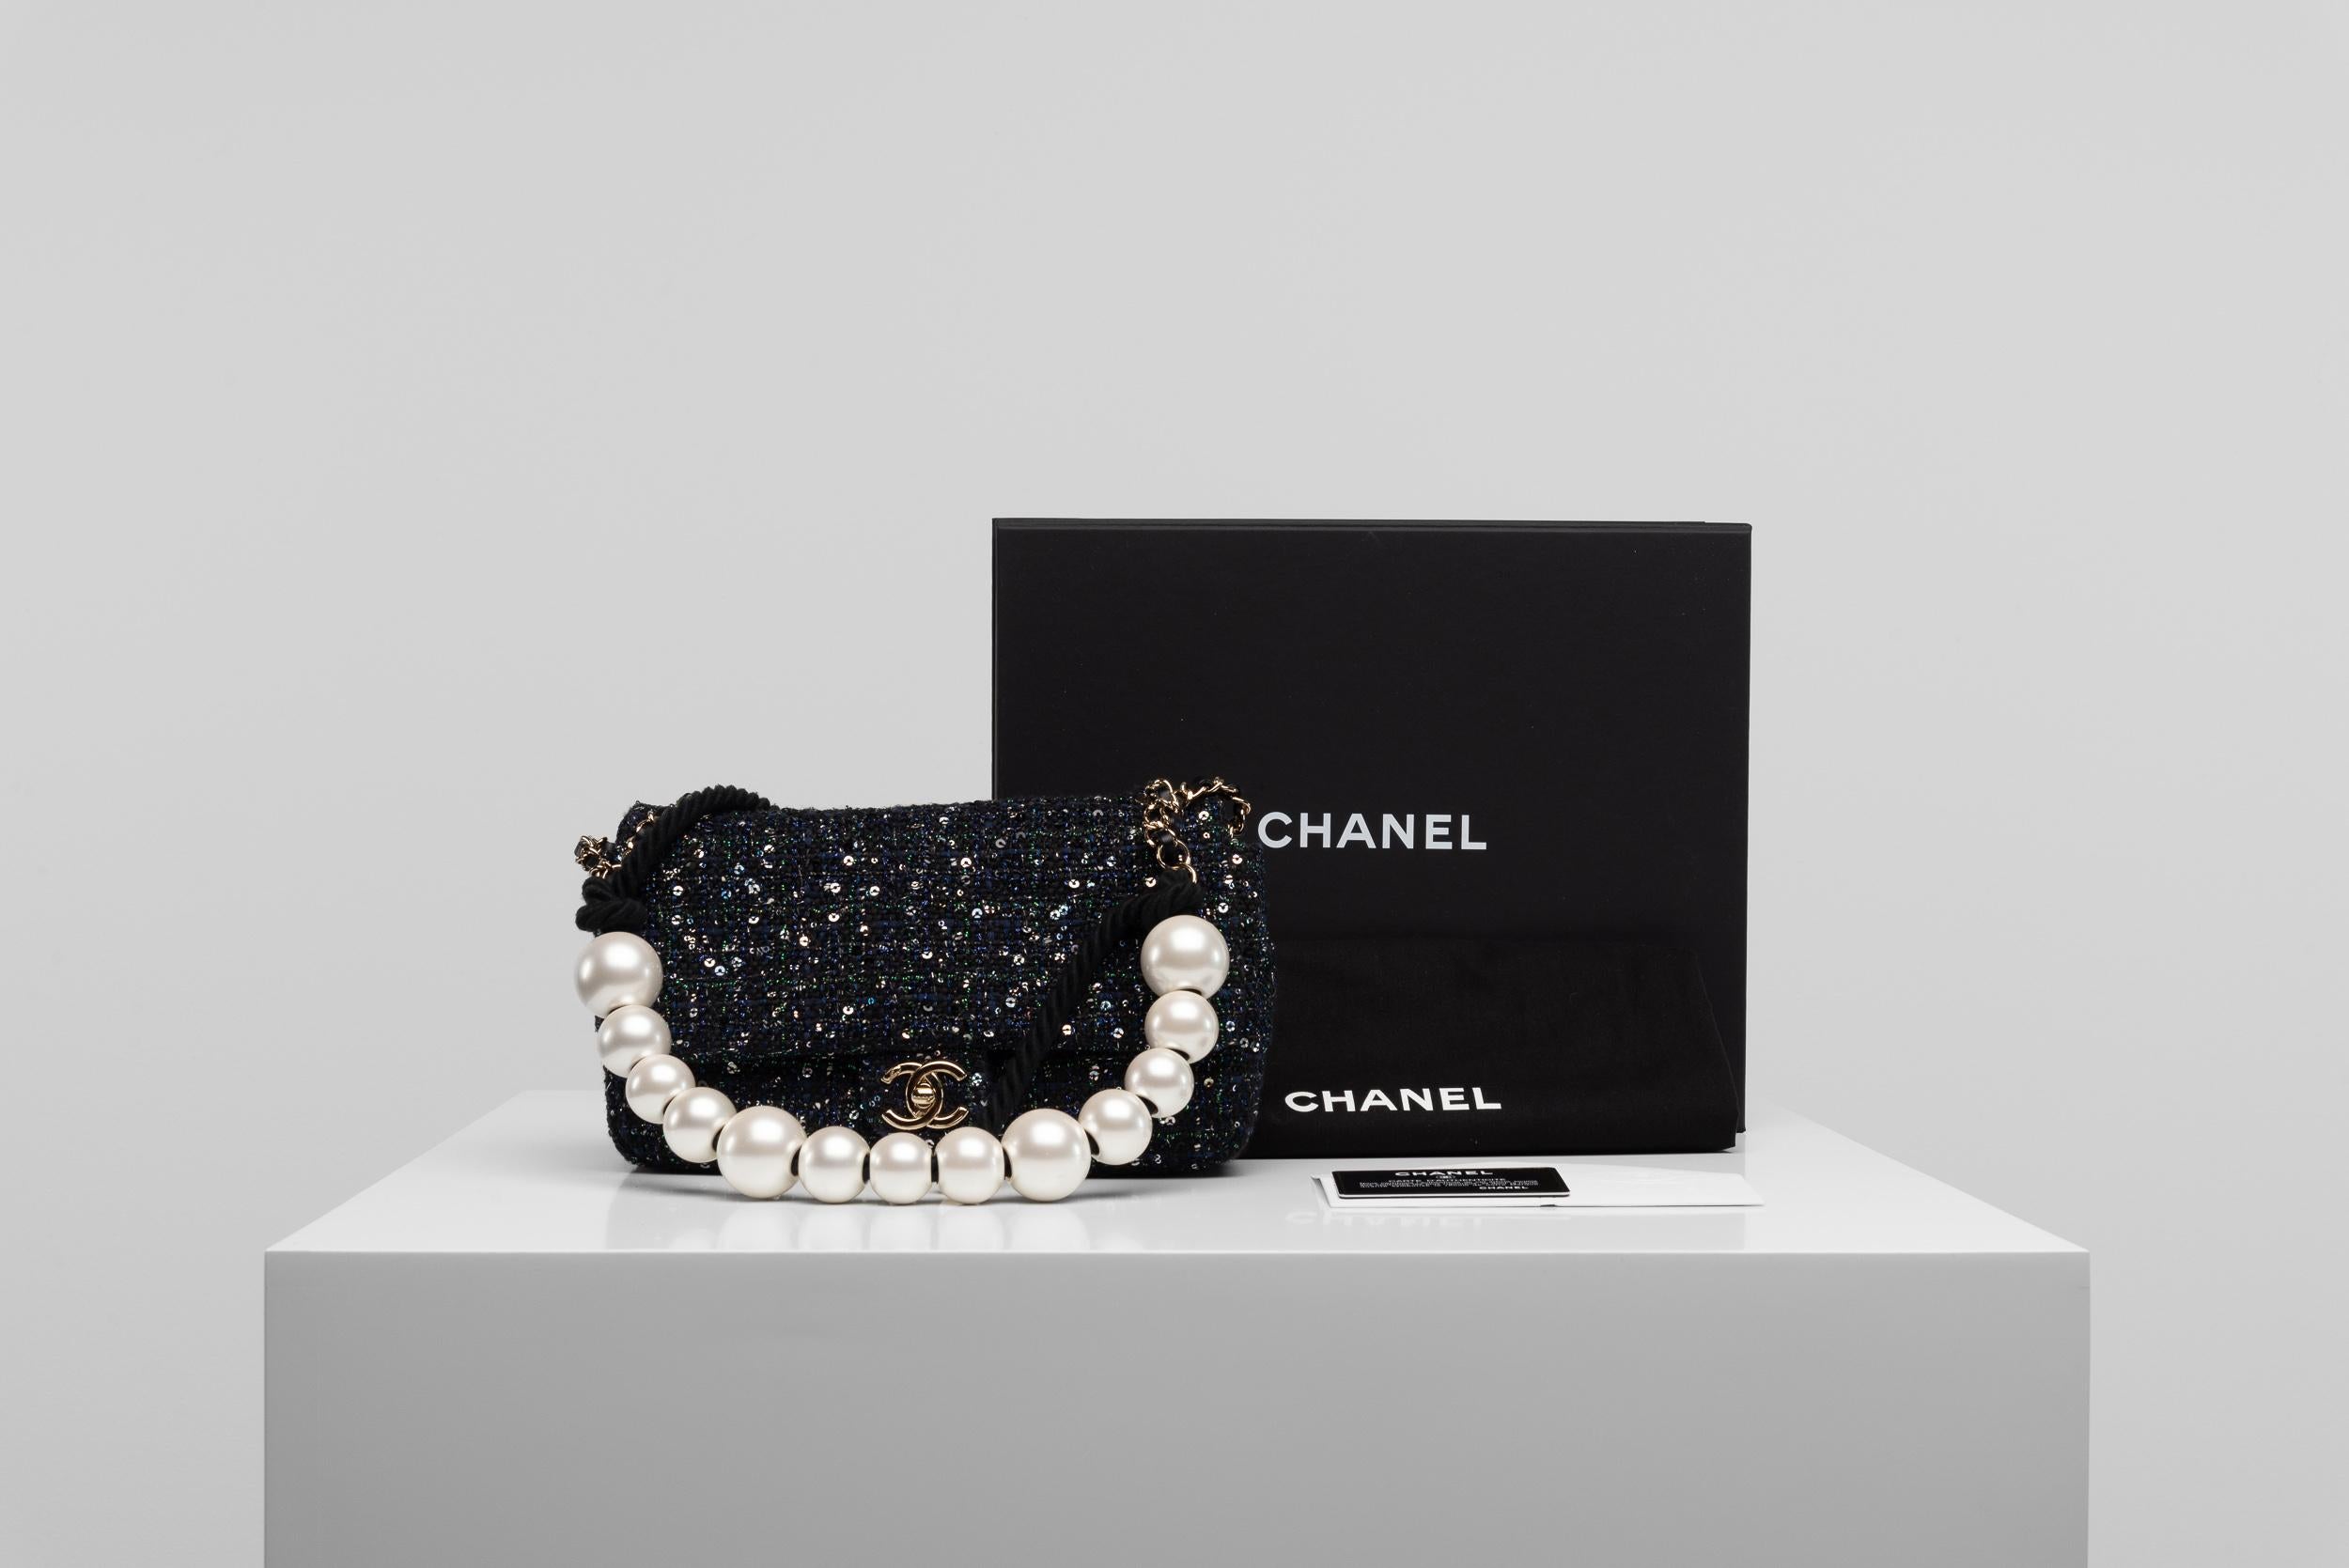 De la Collection SINETI nous vous proposons ce sac à rabat en tweed à paillettes et perles de Chanel :
- Marque : Chanel
- Modèle : Sac à rabat à paillettes
- Année : 2019
- Code : 27856727 
- Condit : Très bon
- MATERIAL : Paillettes, cuir,